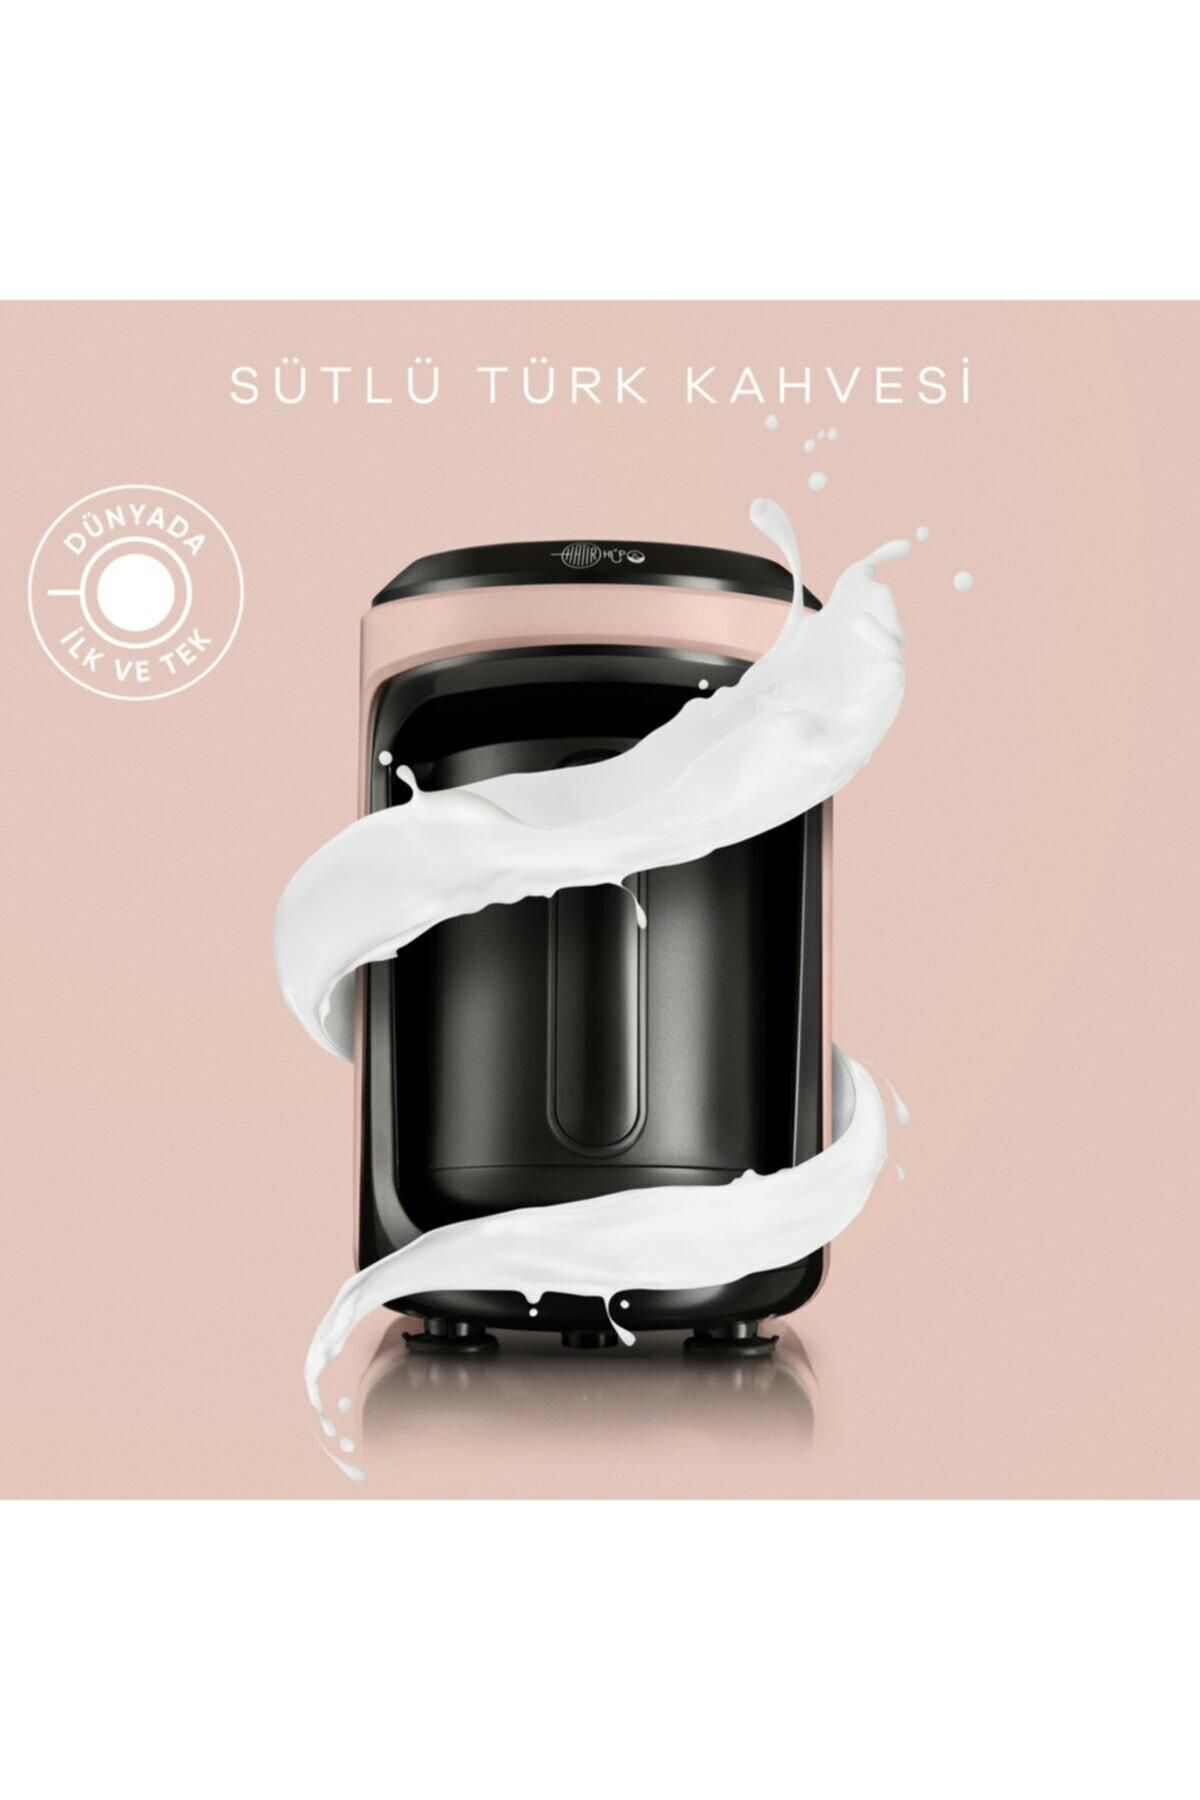 Karaca Hatır Hüps Sütlü Türk Kahve Makinesi Pearly Pink 153.03.06.2264